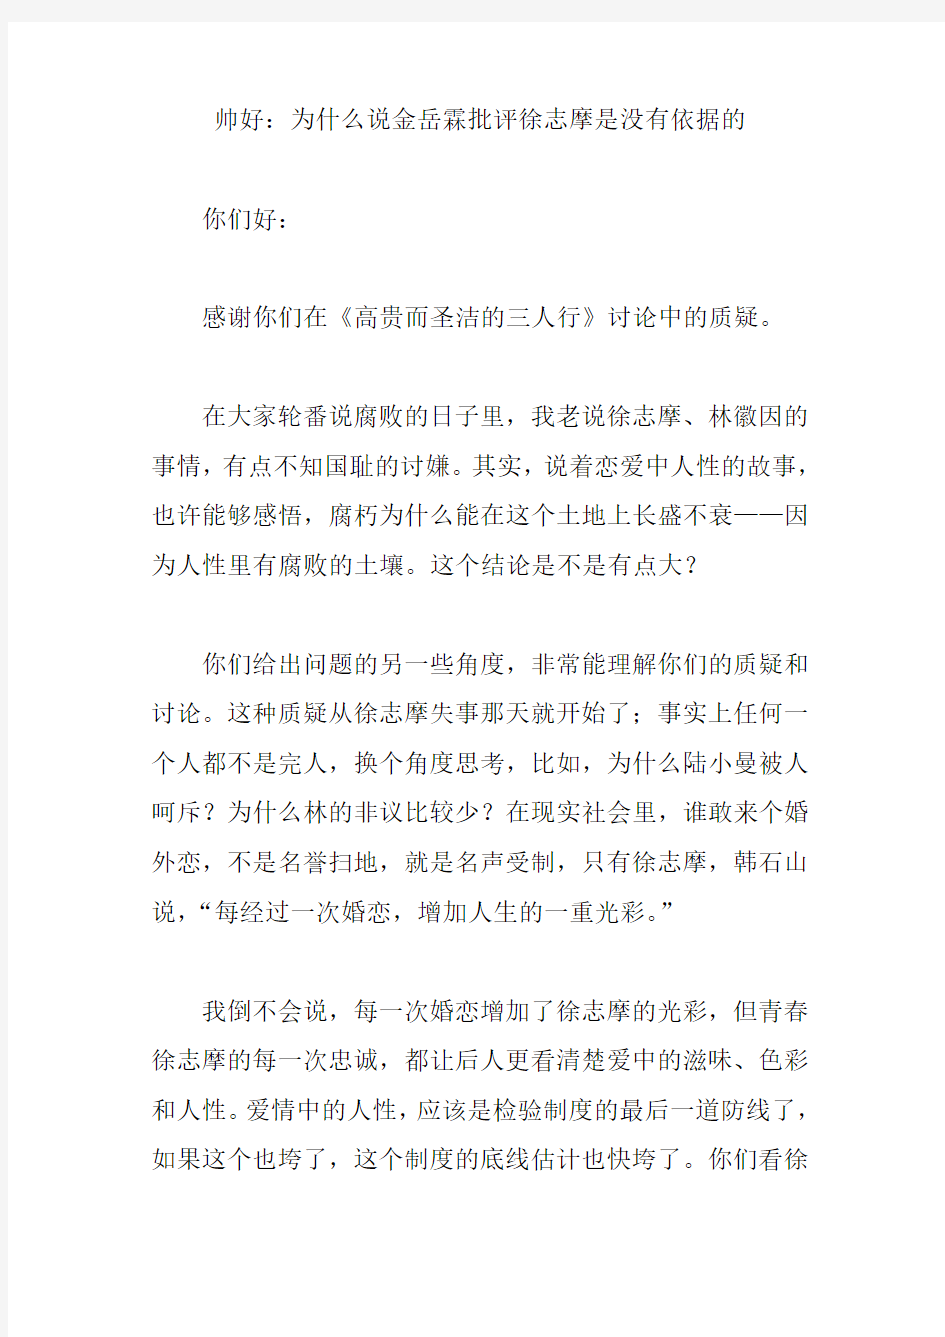 帅好：为什么说金岳霖批评徐志摩是没有依据的